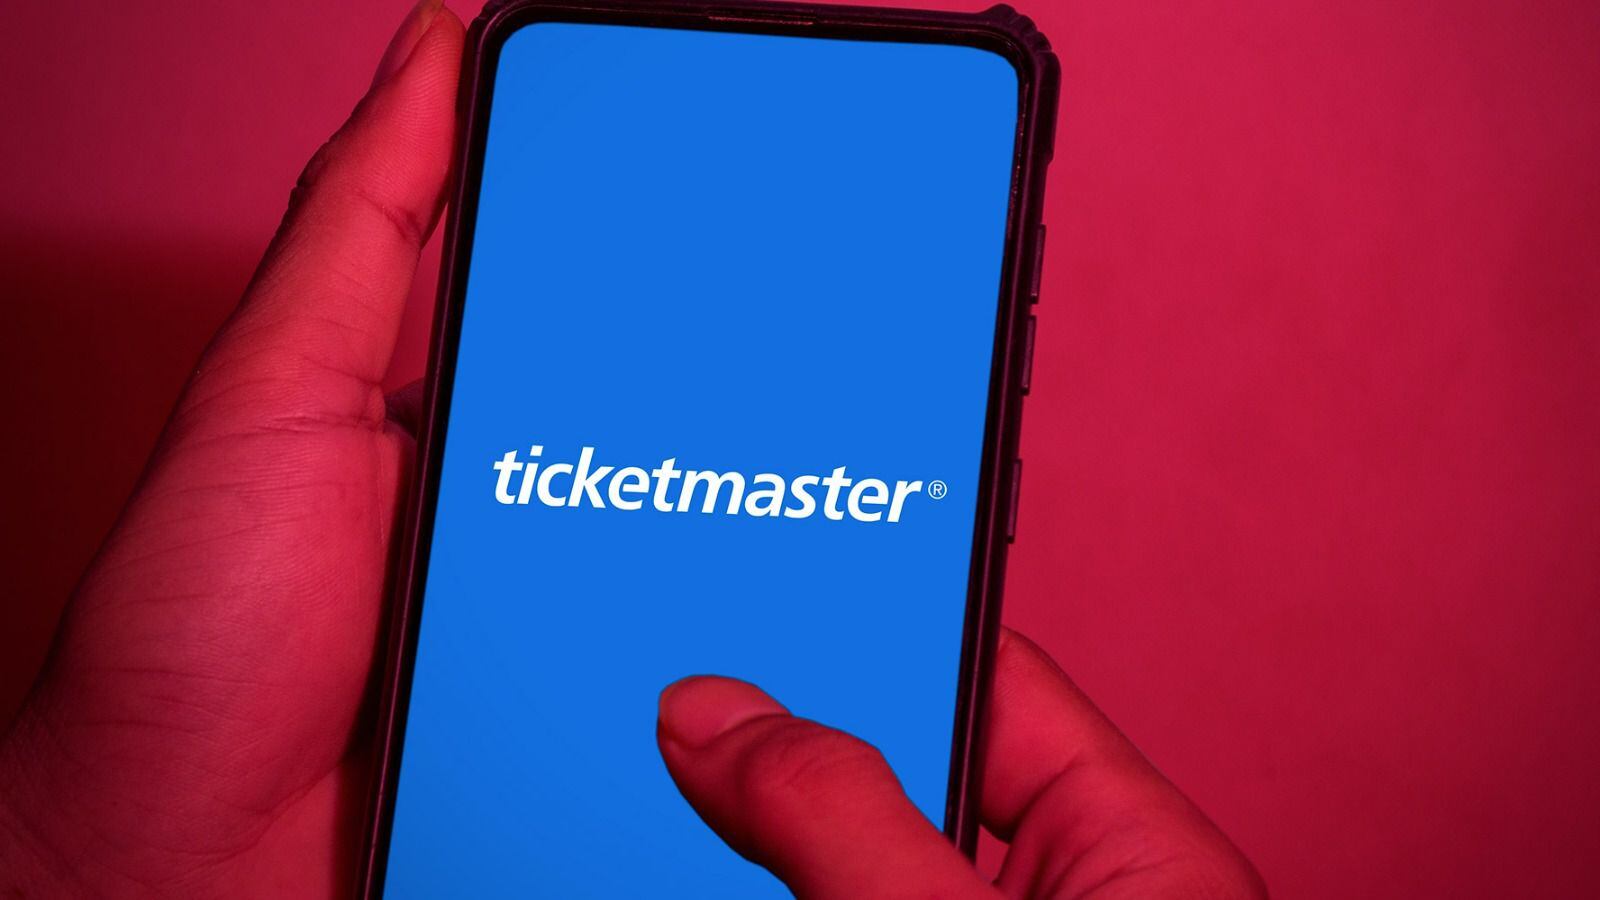 Ticketmaster repartirá 3.4 millones de pesos a consumidores afectados por cancelación de boletos, informó Profeco.